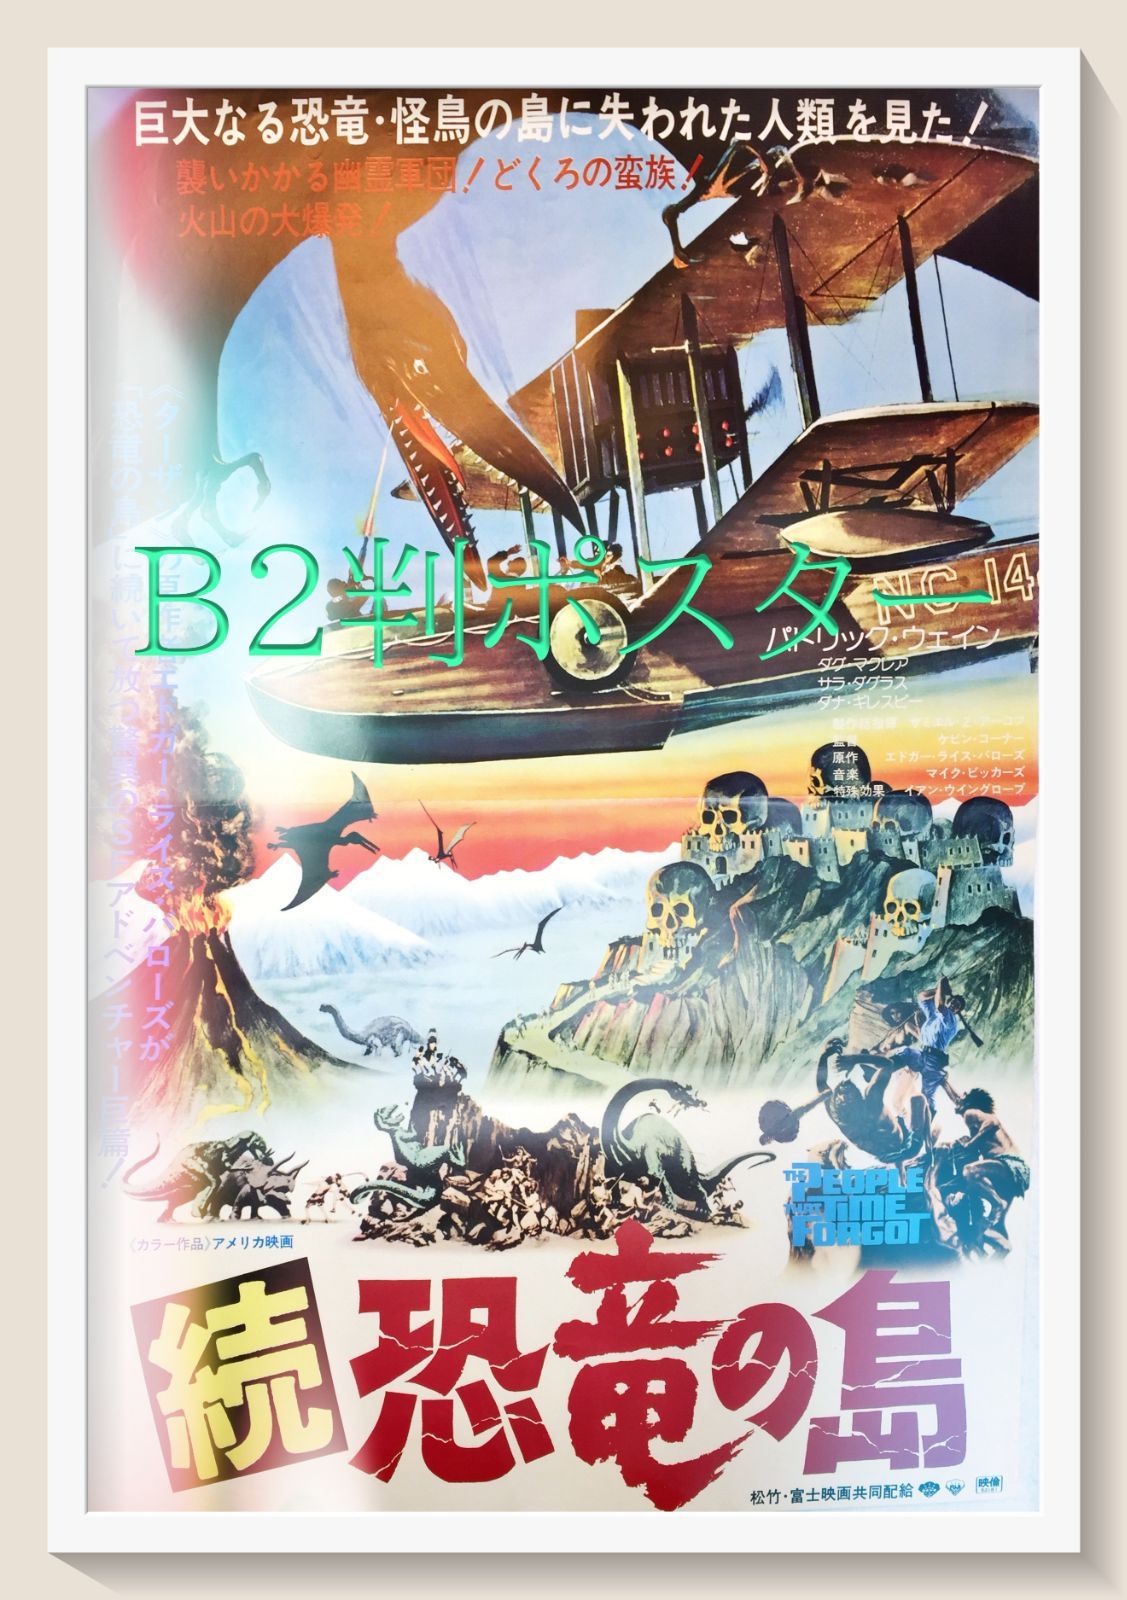 『続・恐竜の島』映画B2判オリジナルポスター